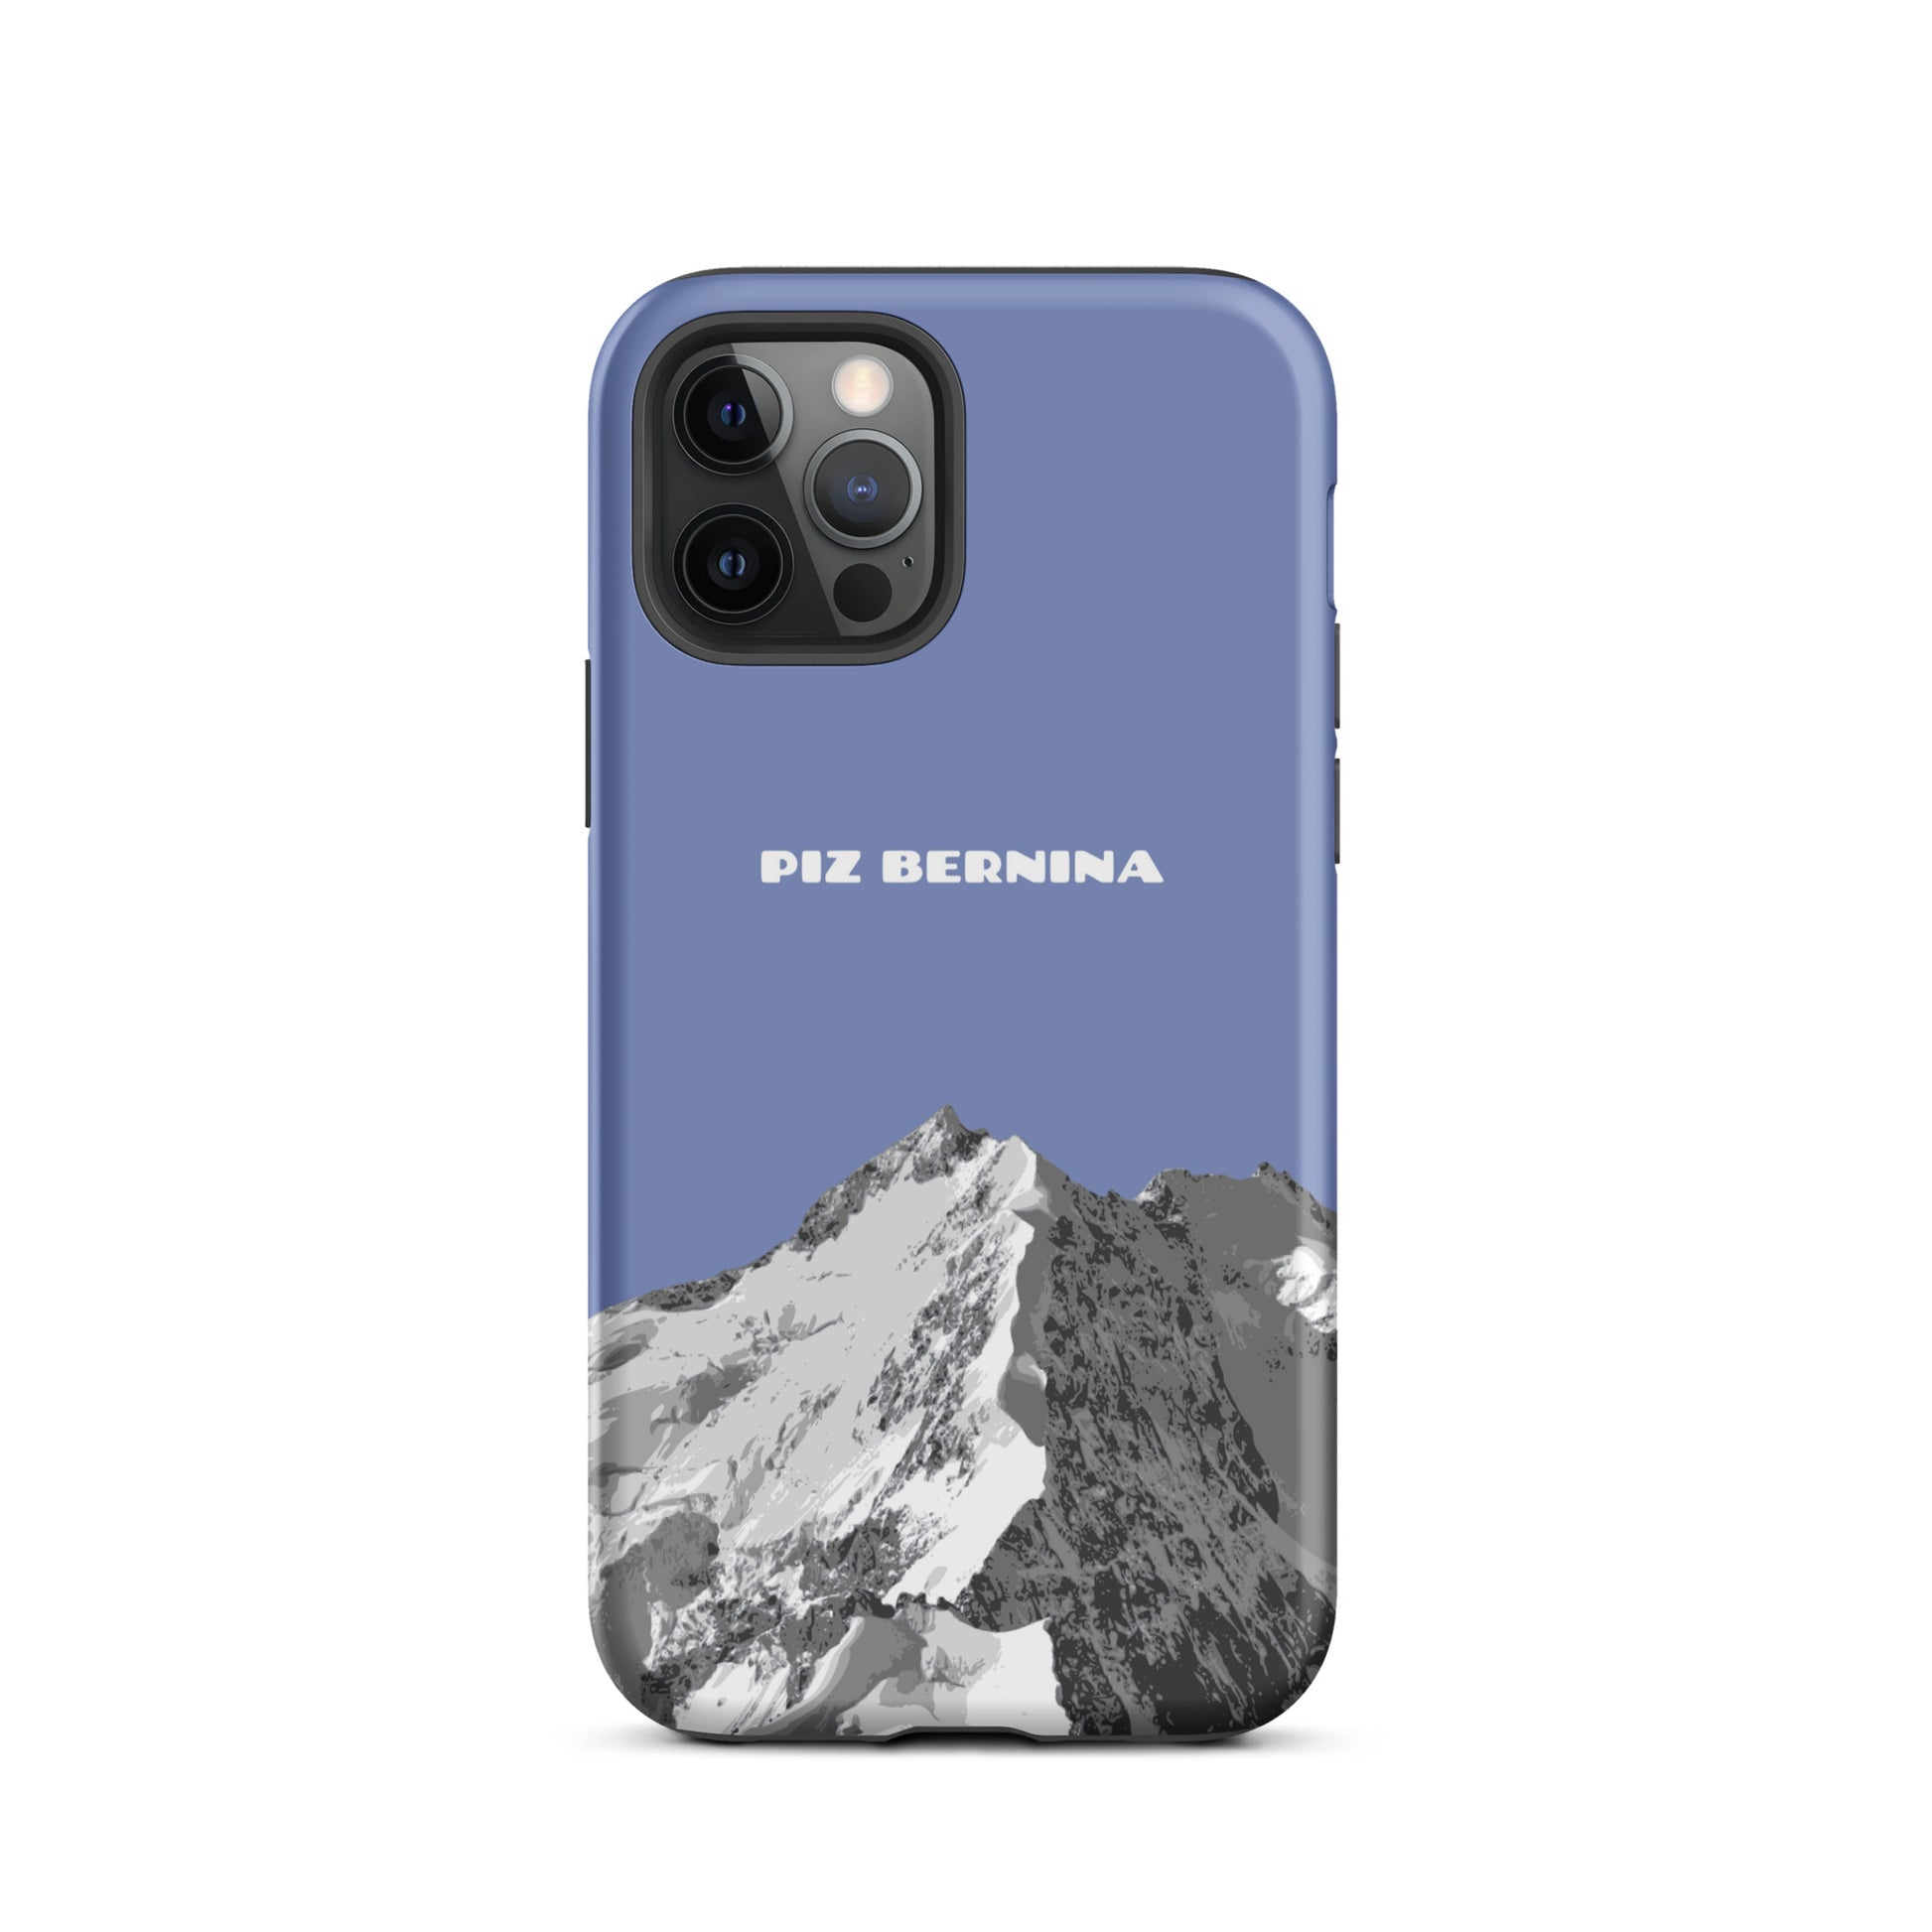 Hülle für das iPhone 12 Pro von Apple in der Farbe Pastellblau, dass den Piz Bernina in Graubünden zeigt.